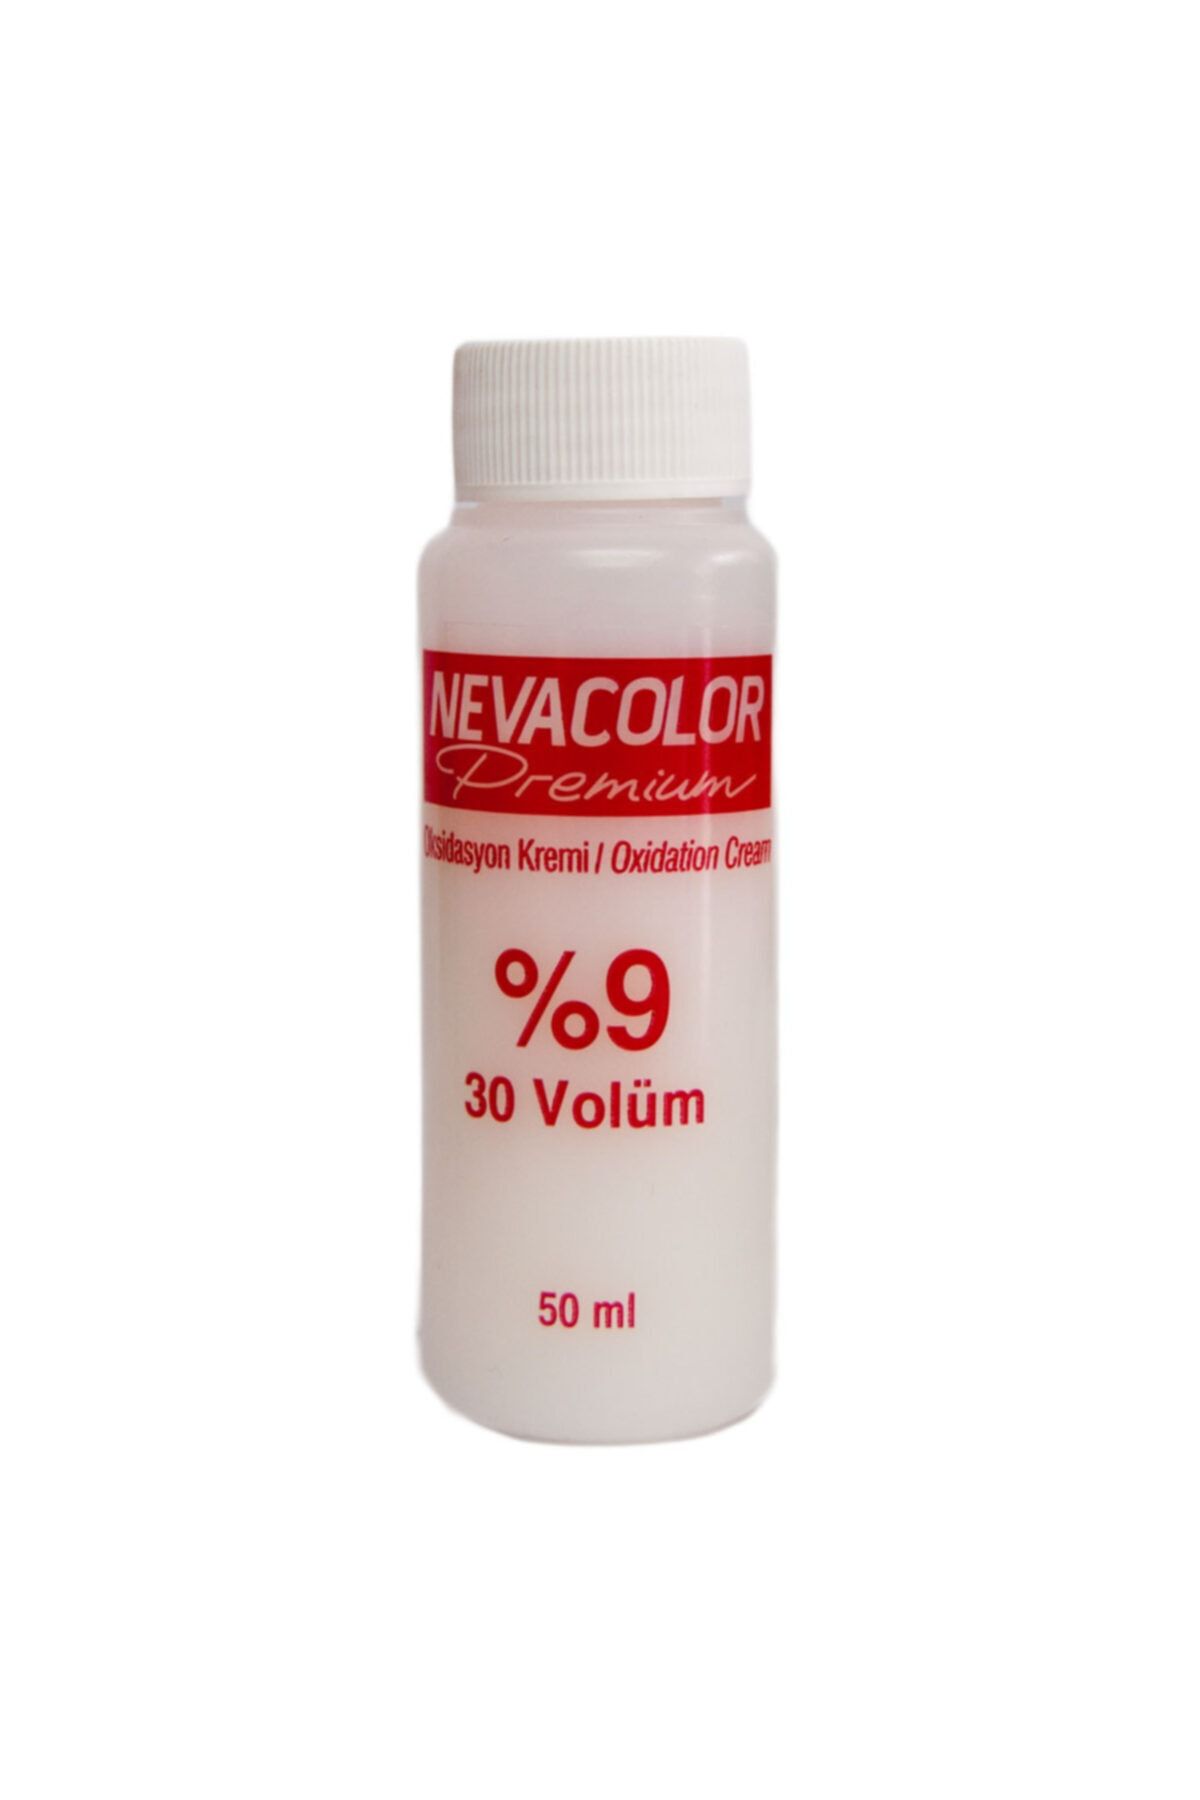 Neva %9 30 Volüm Oksidan Krem  50 ml